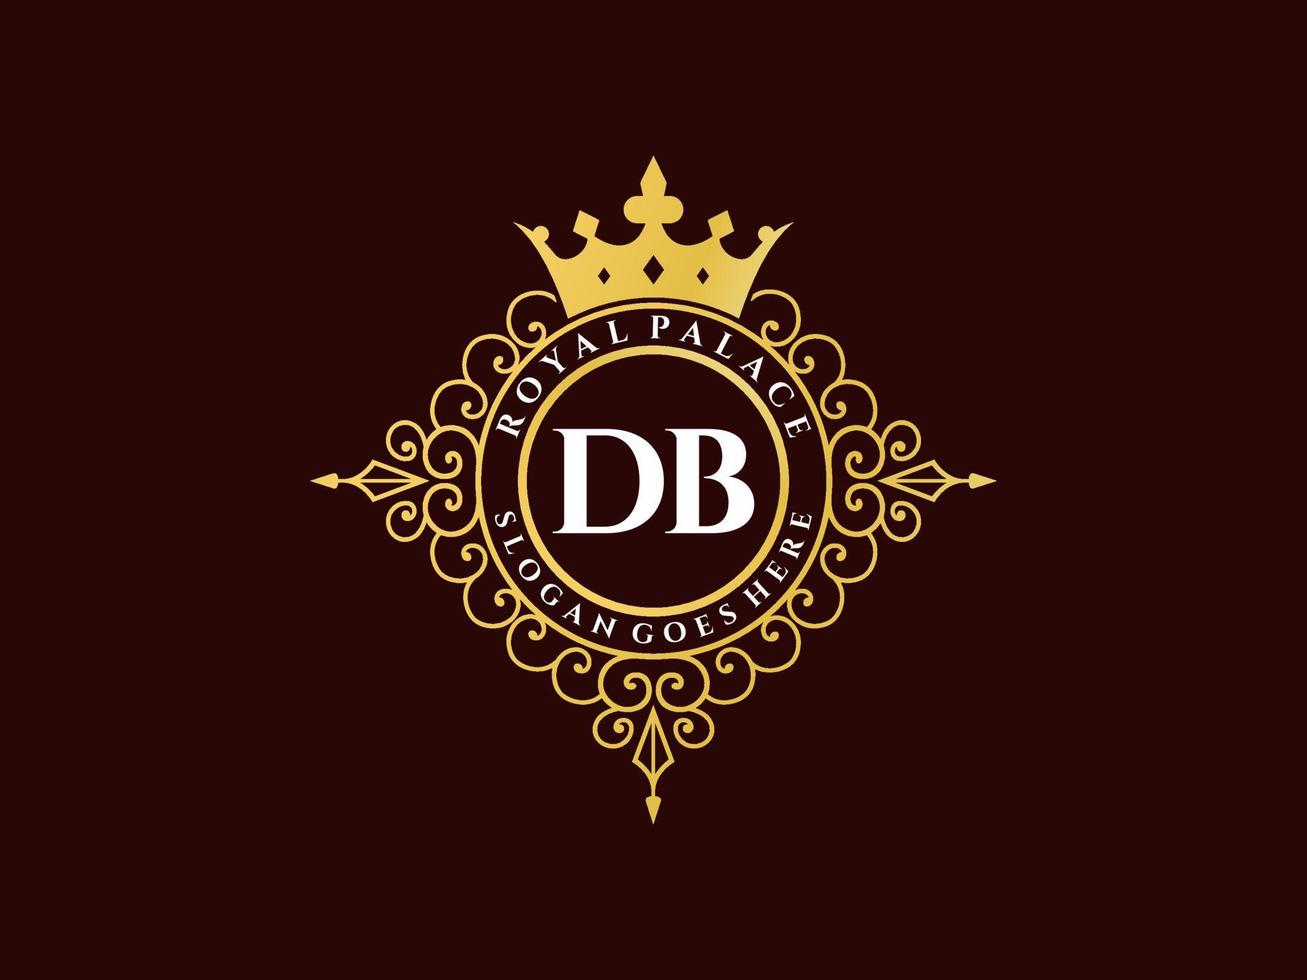 letra db logotipo victoriano de lujo real antiguo con marco ornamental. vector